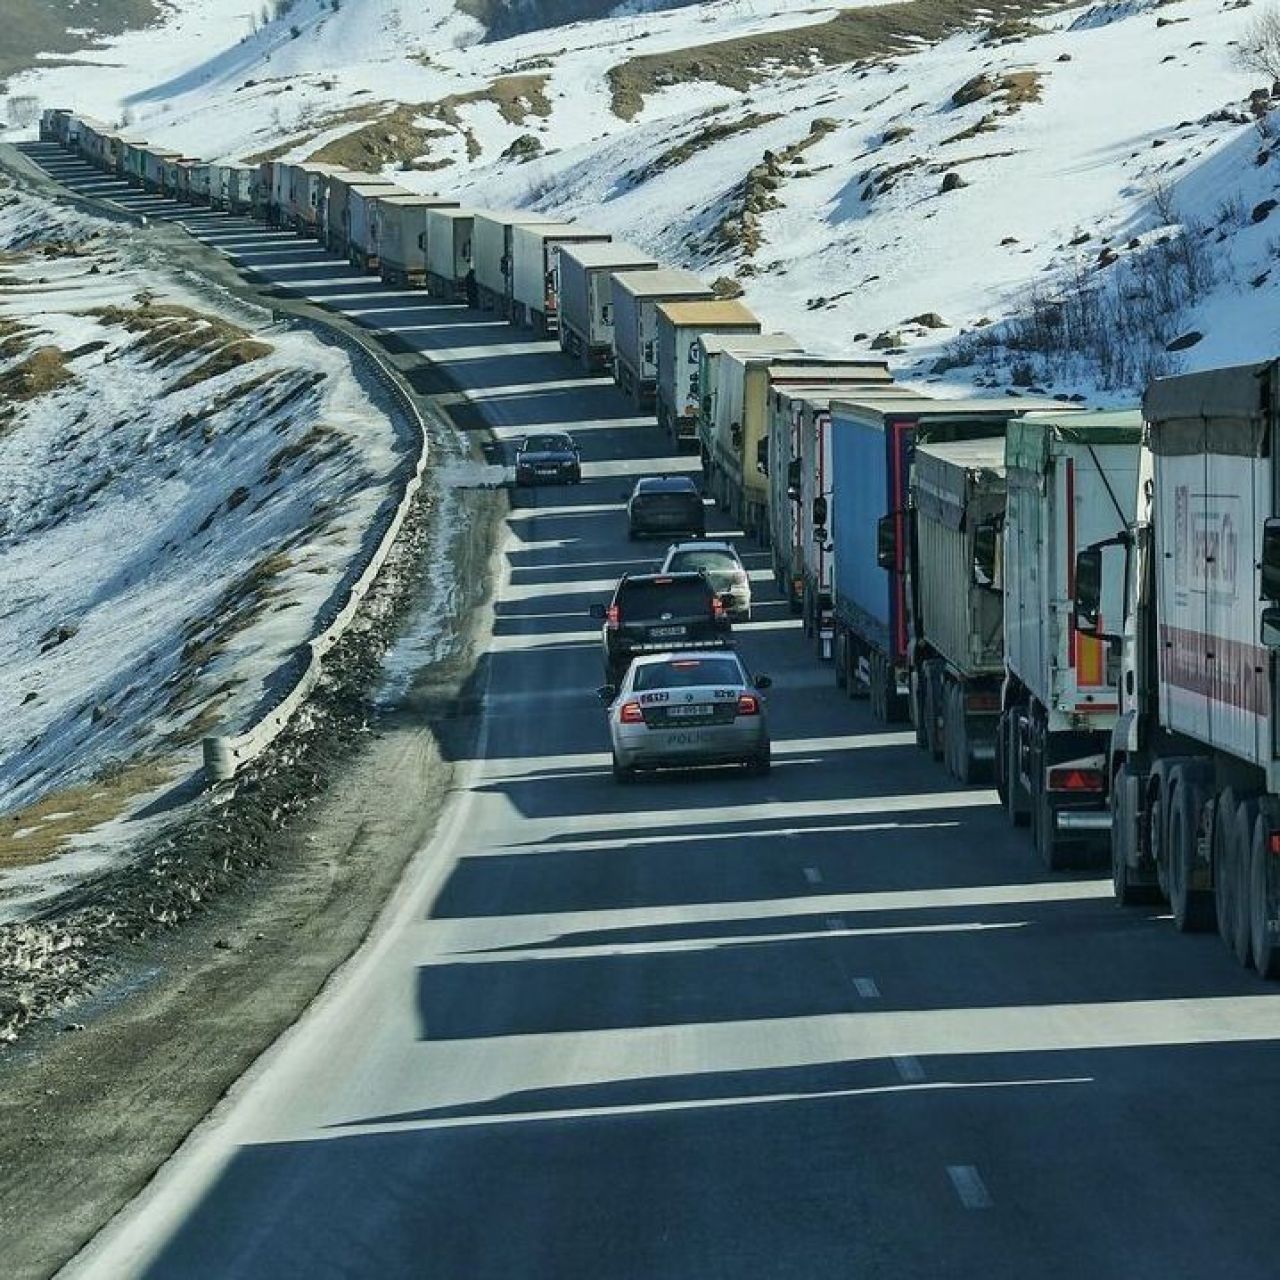 Հայկական մոտ 600 բեռնատար սպասում է Վերին Լարսով անցնելուն. մաքսային կցորդ